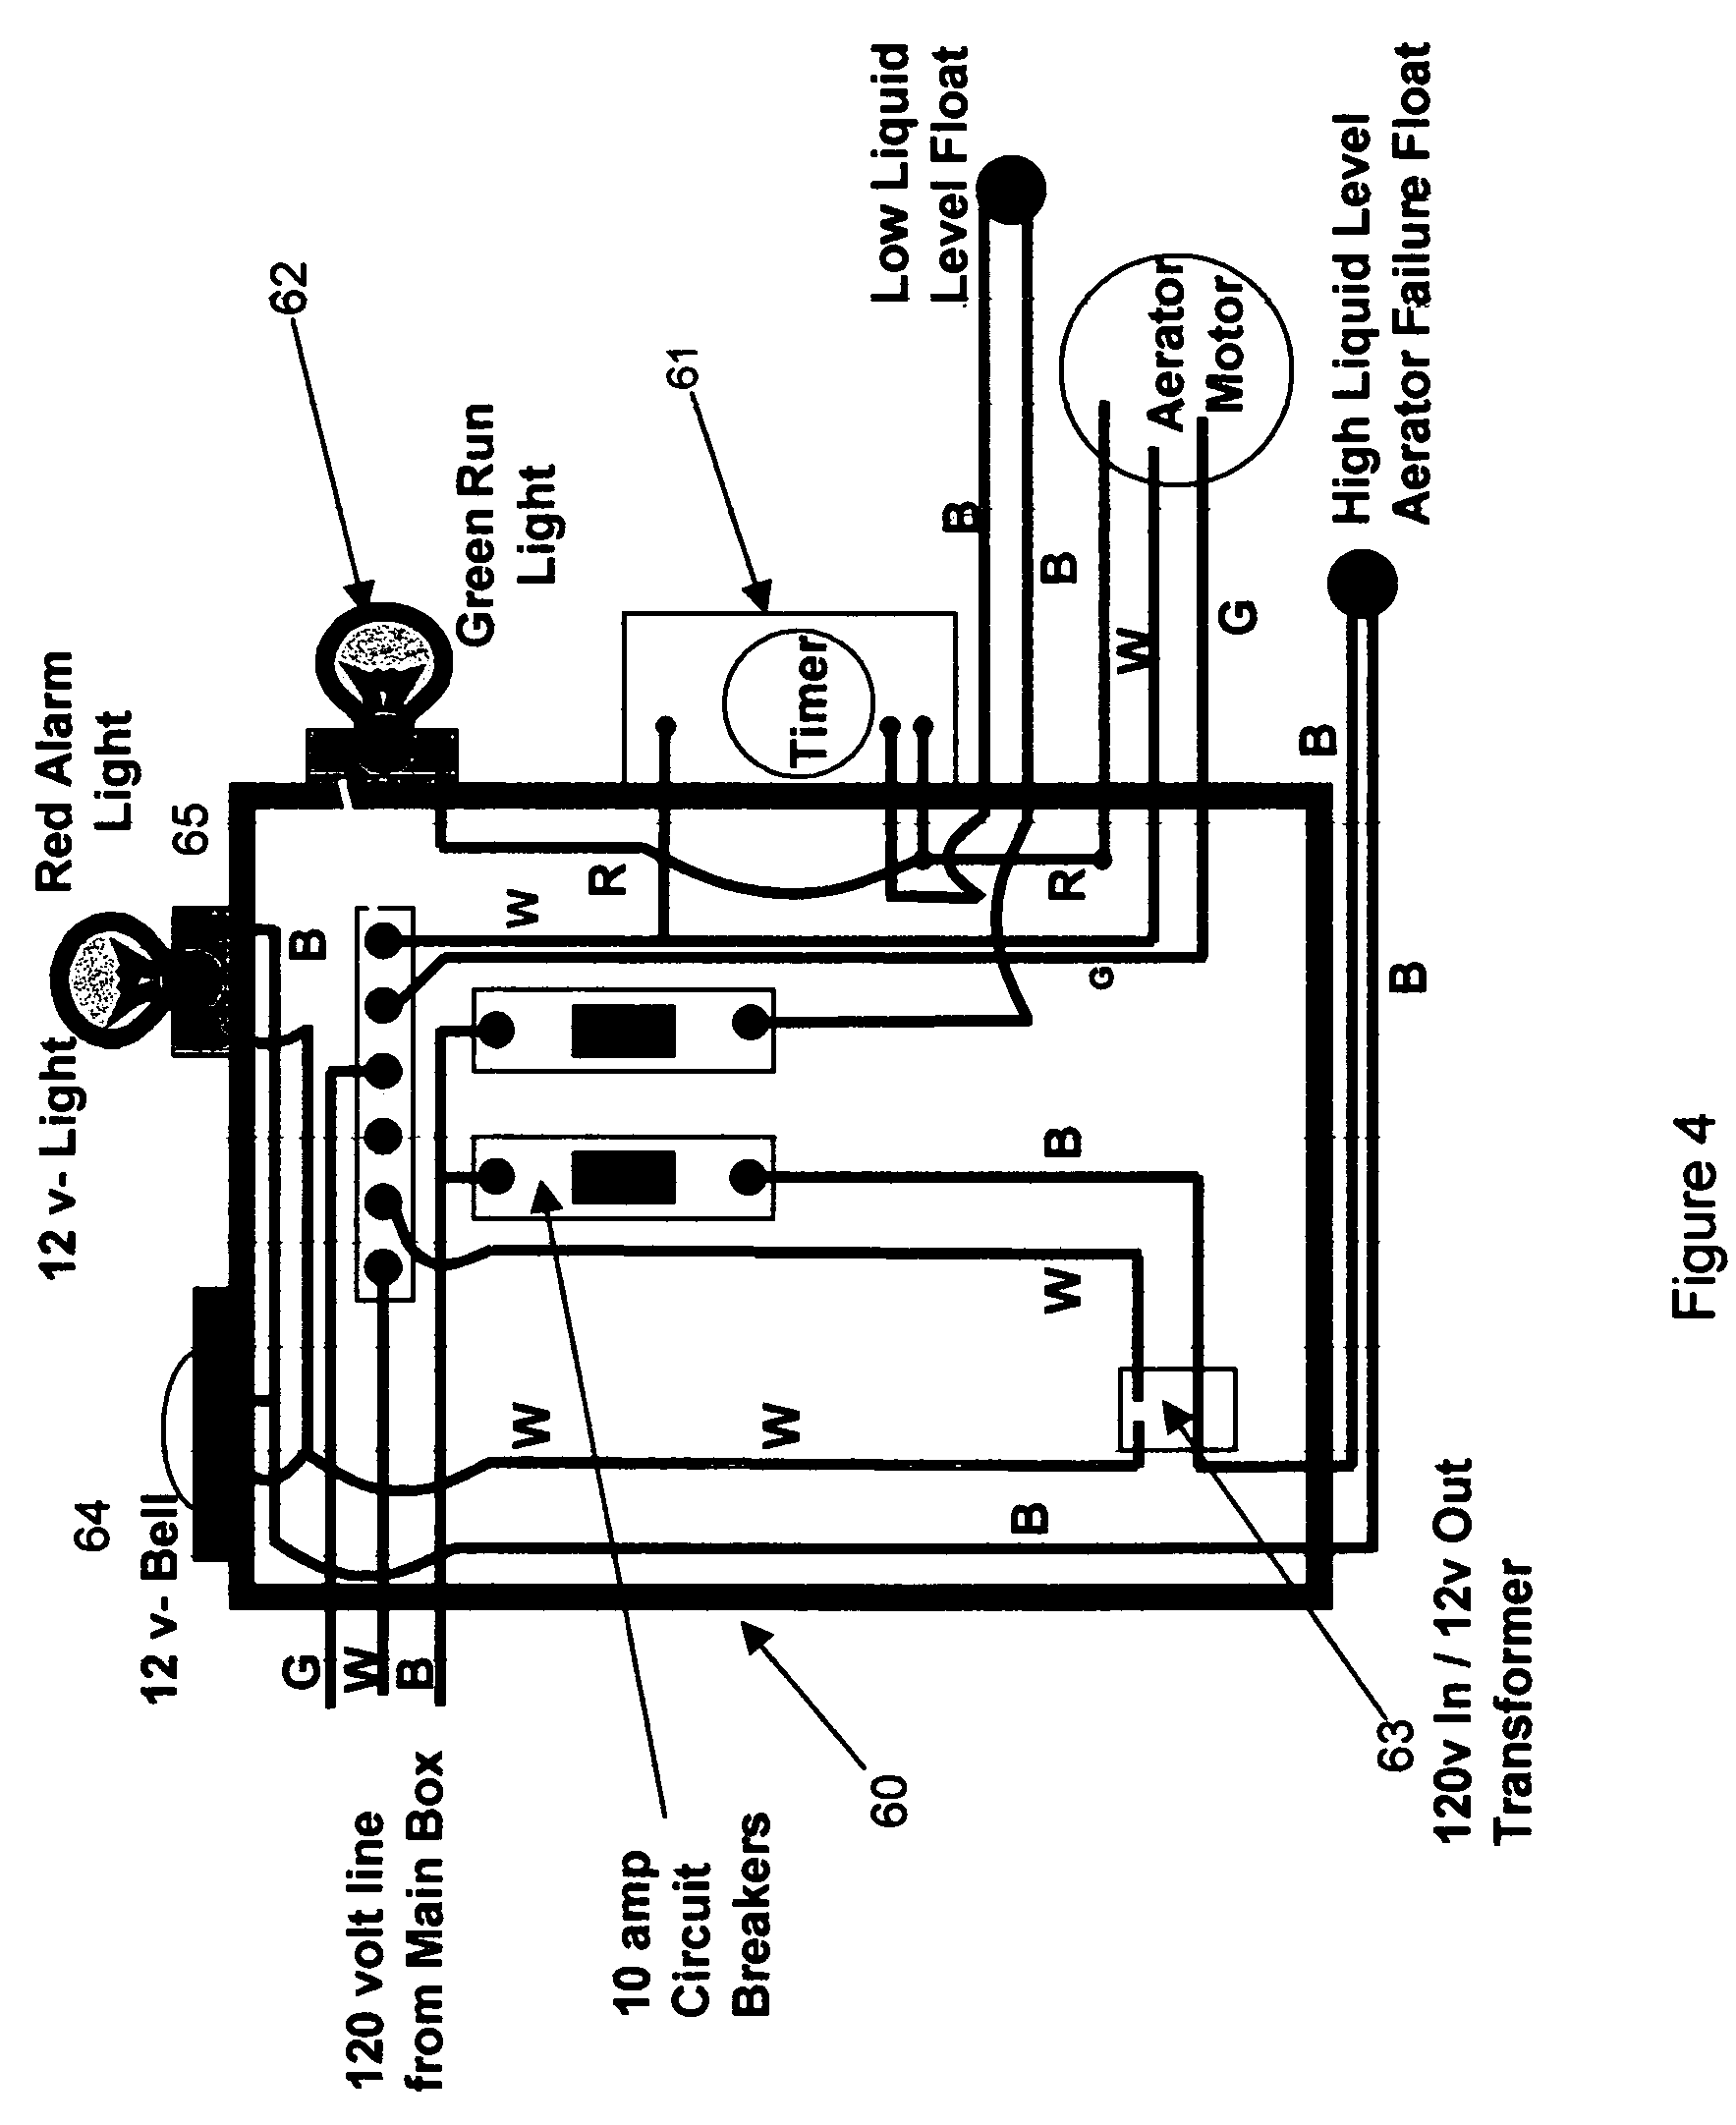 aerator septic system diagram